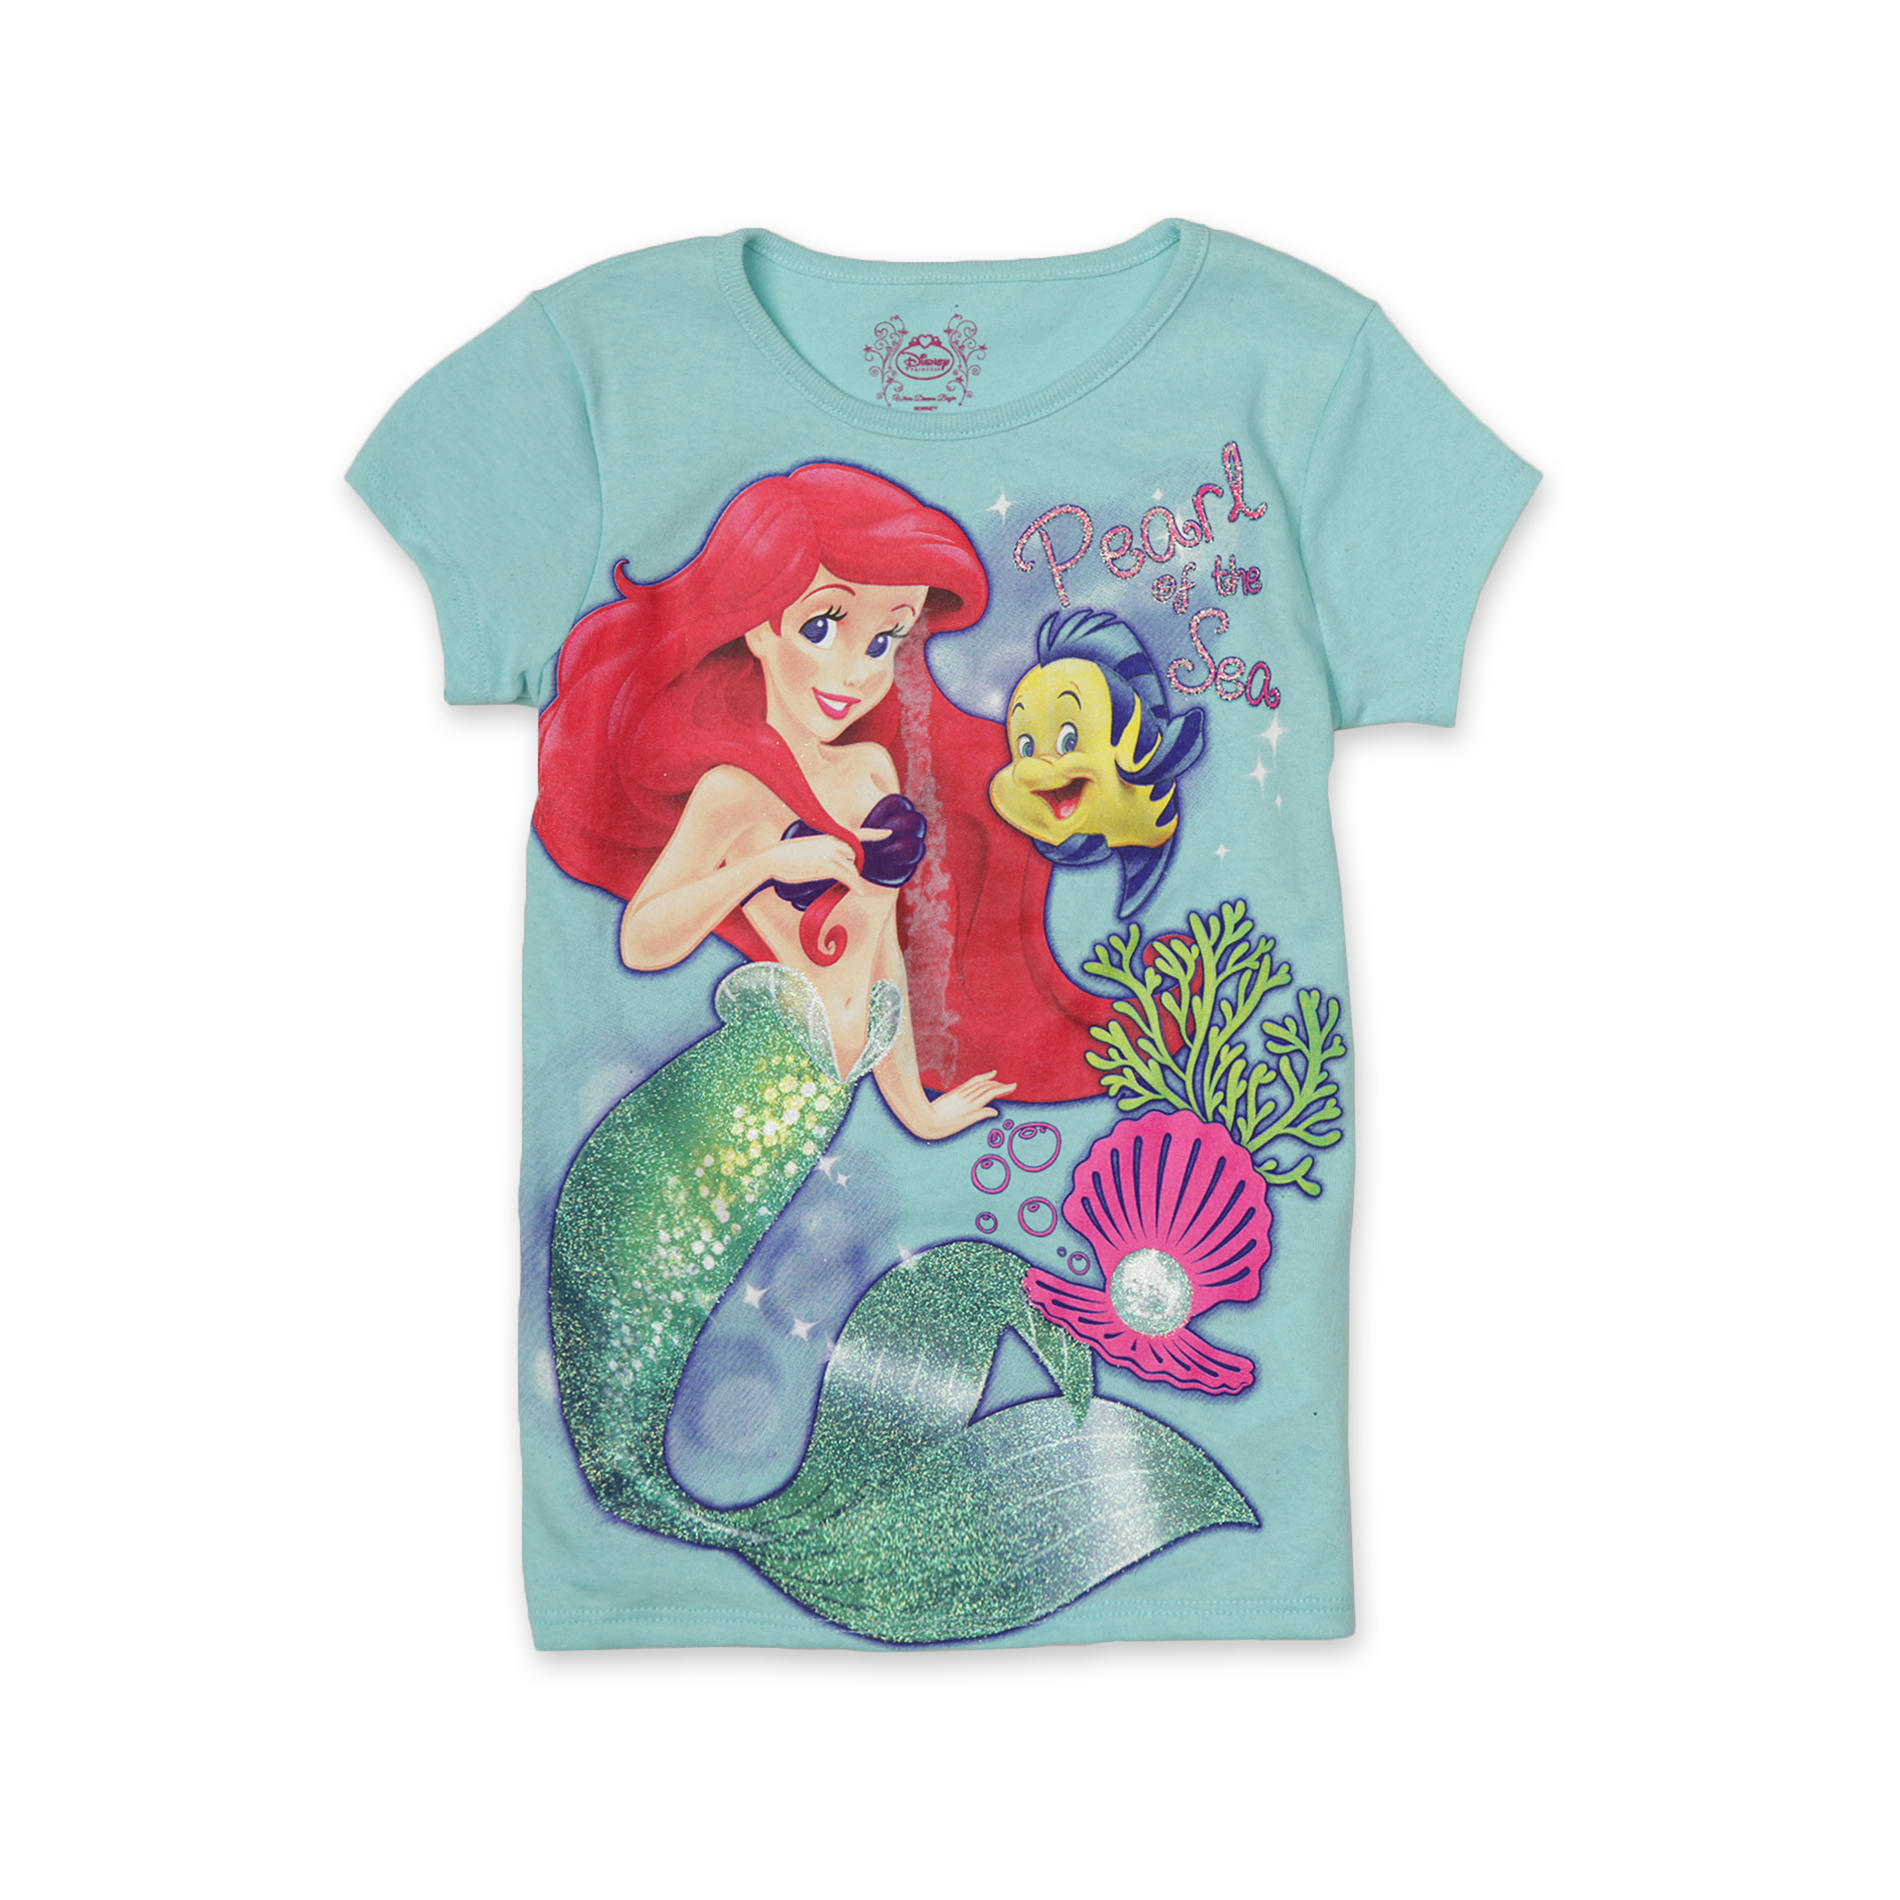 Disney Princess Girl's Cap-Sleeve Top - Ariel & Flounder